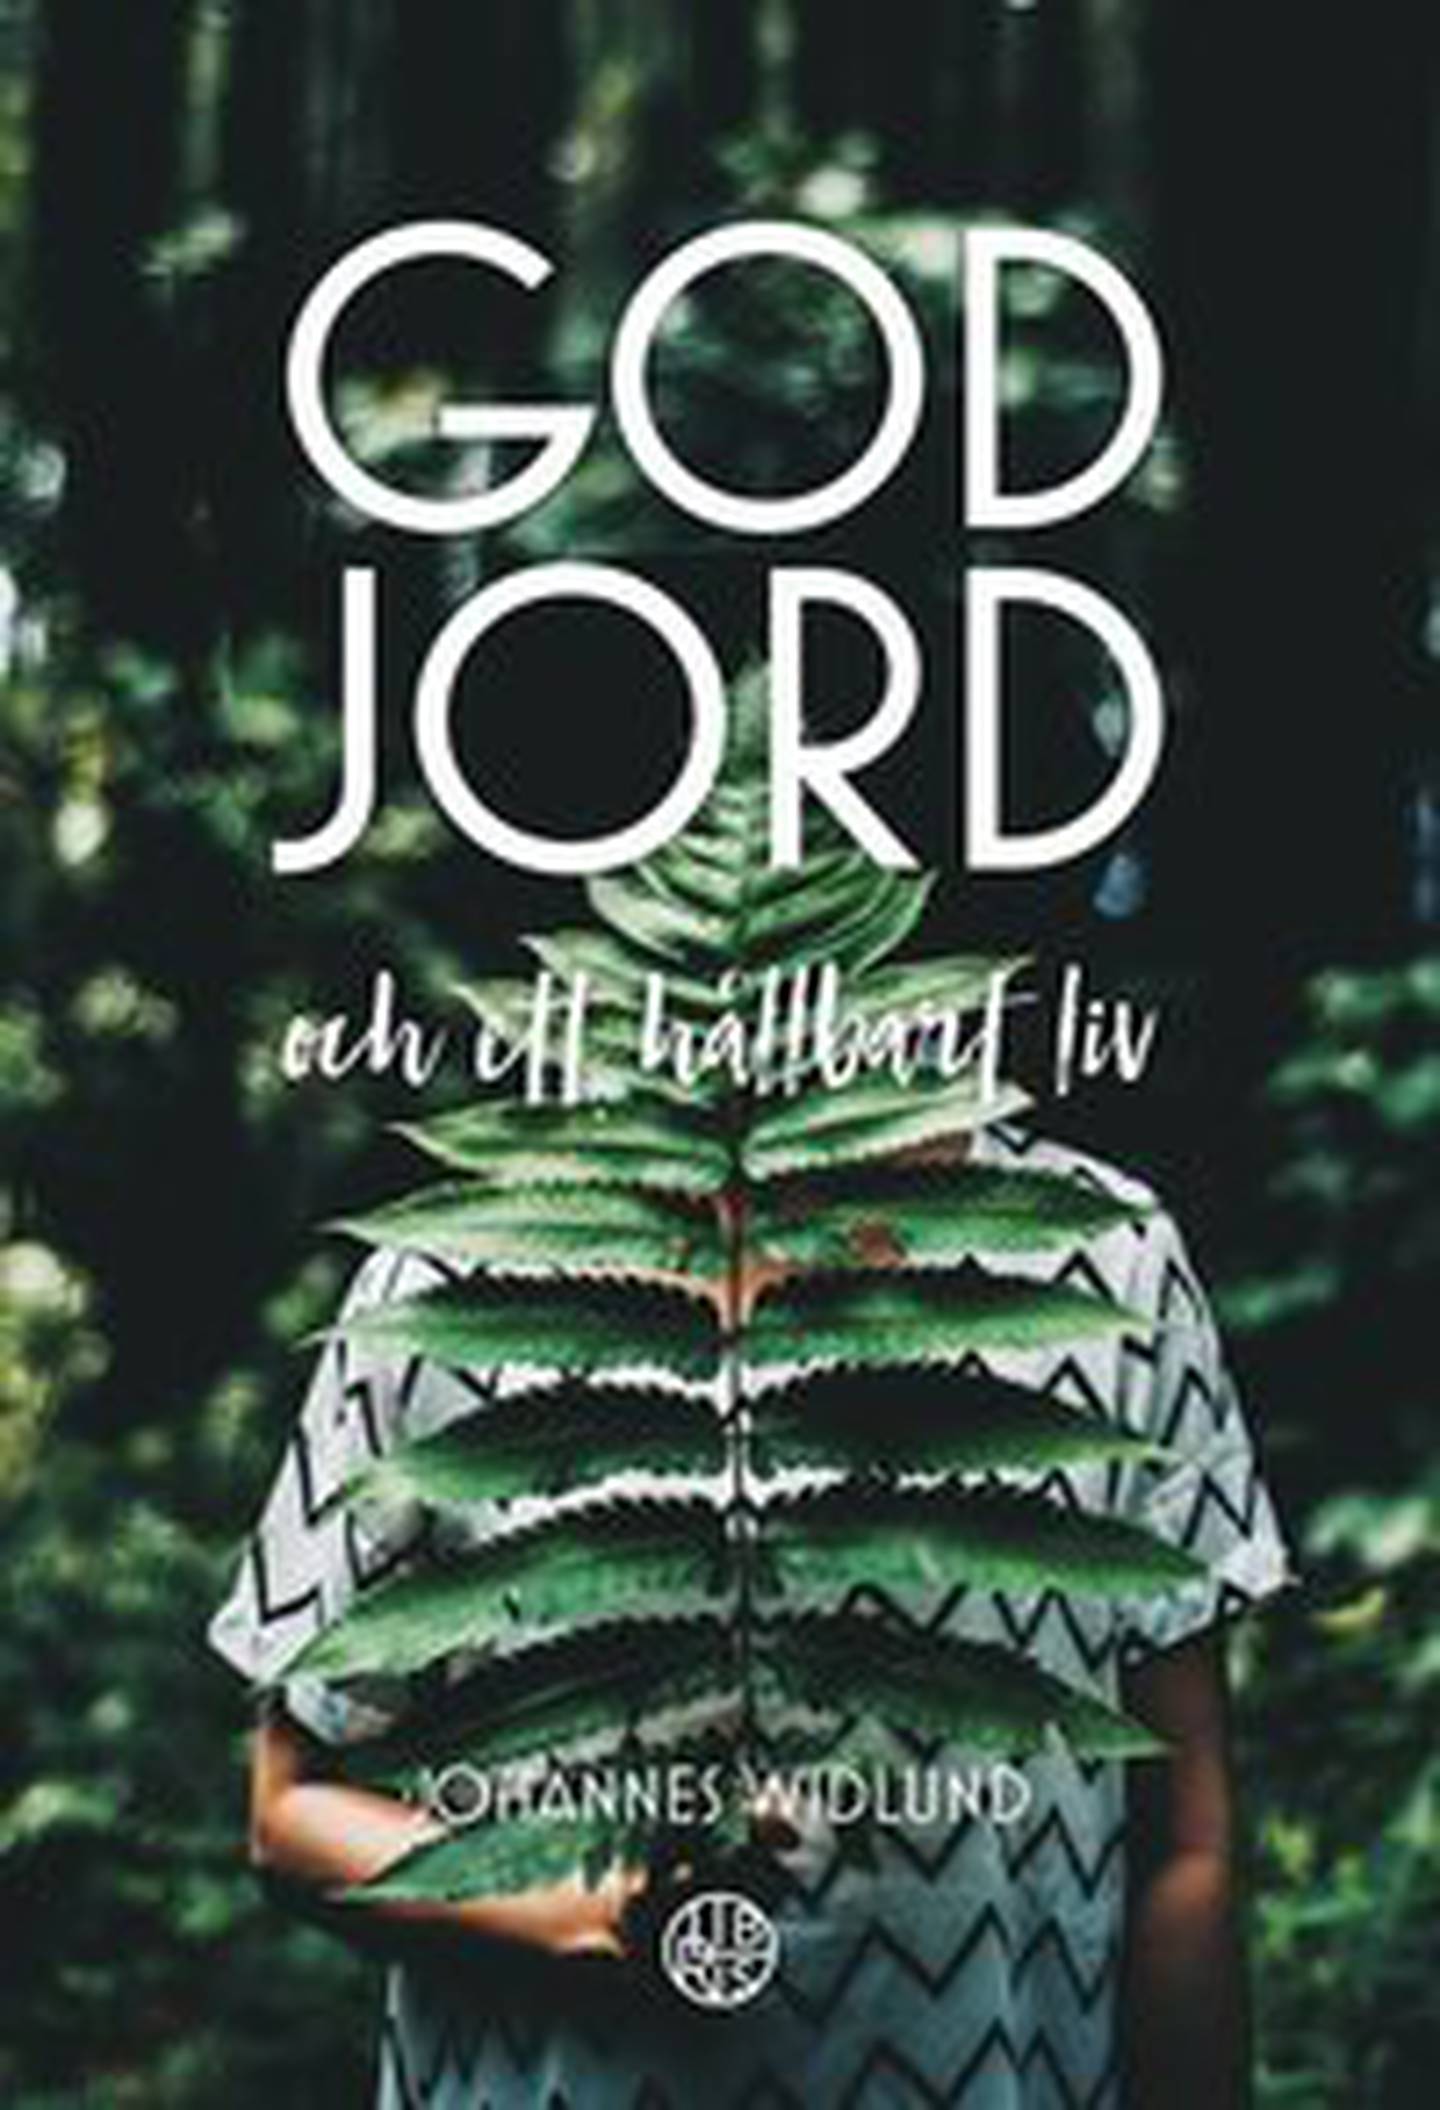 Omslag "God Jord - och ett hållbart liv" av Johannes Widlund